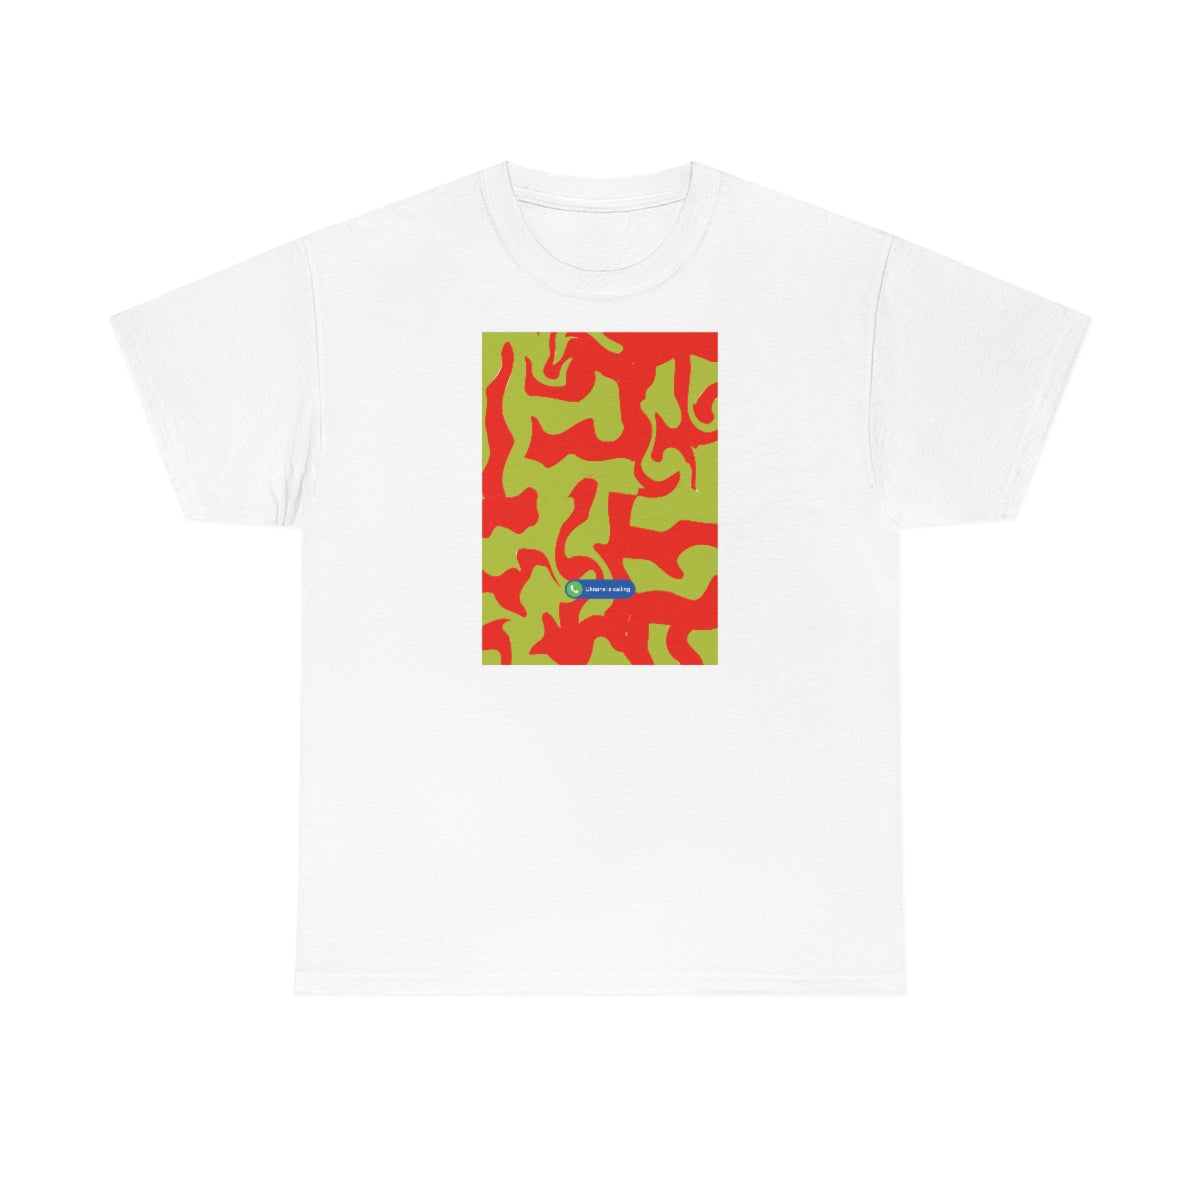 Hypno - T-shirt unisexe